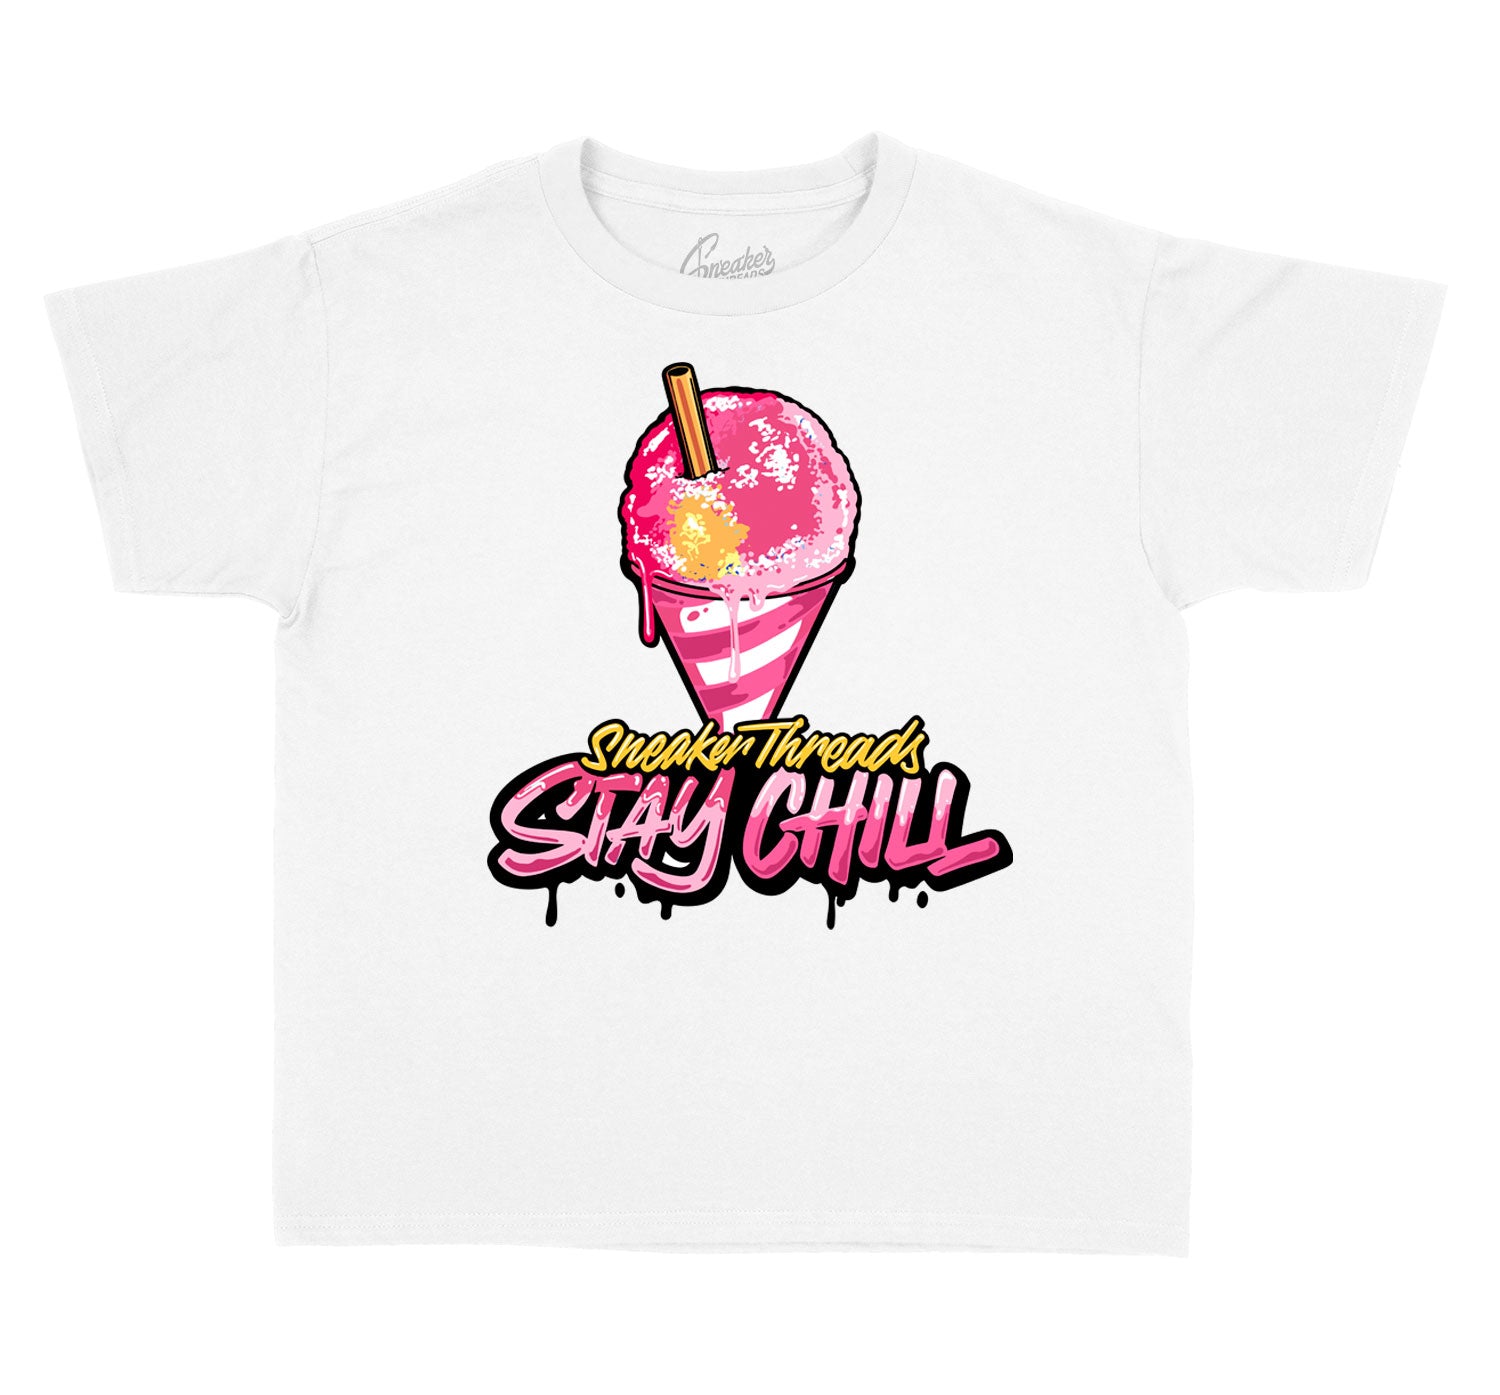 Kids Ice Cream 12 Shirt - Stay Chill - White